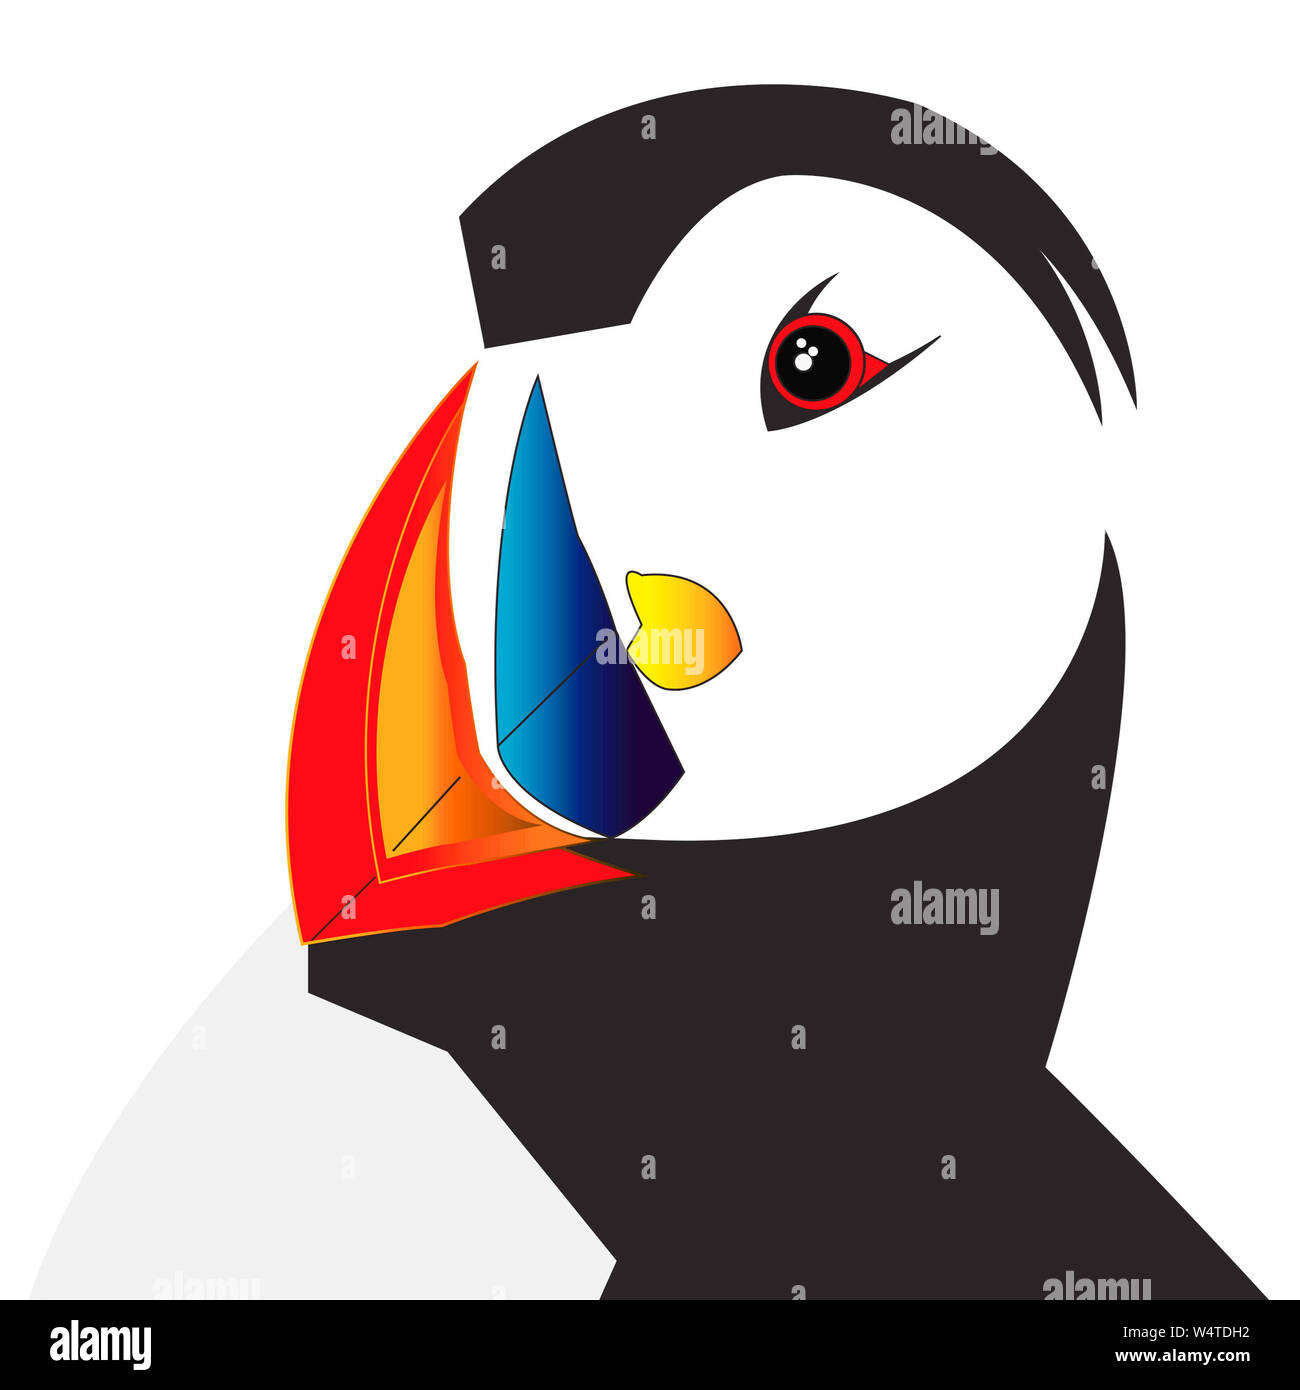 Macareux moine (Fratercula arctica) : une illustration colorée de macareux numérique créé à l'aide de l'un de mes propres photographies de macareux comme référence.Clowns de la mer. Banque D'Images